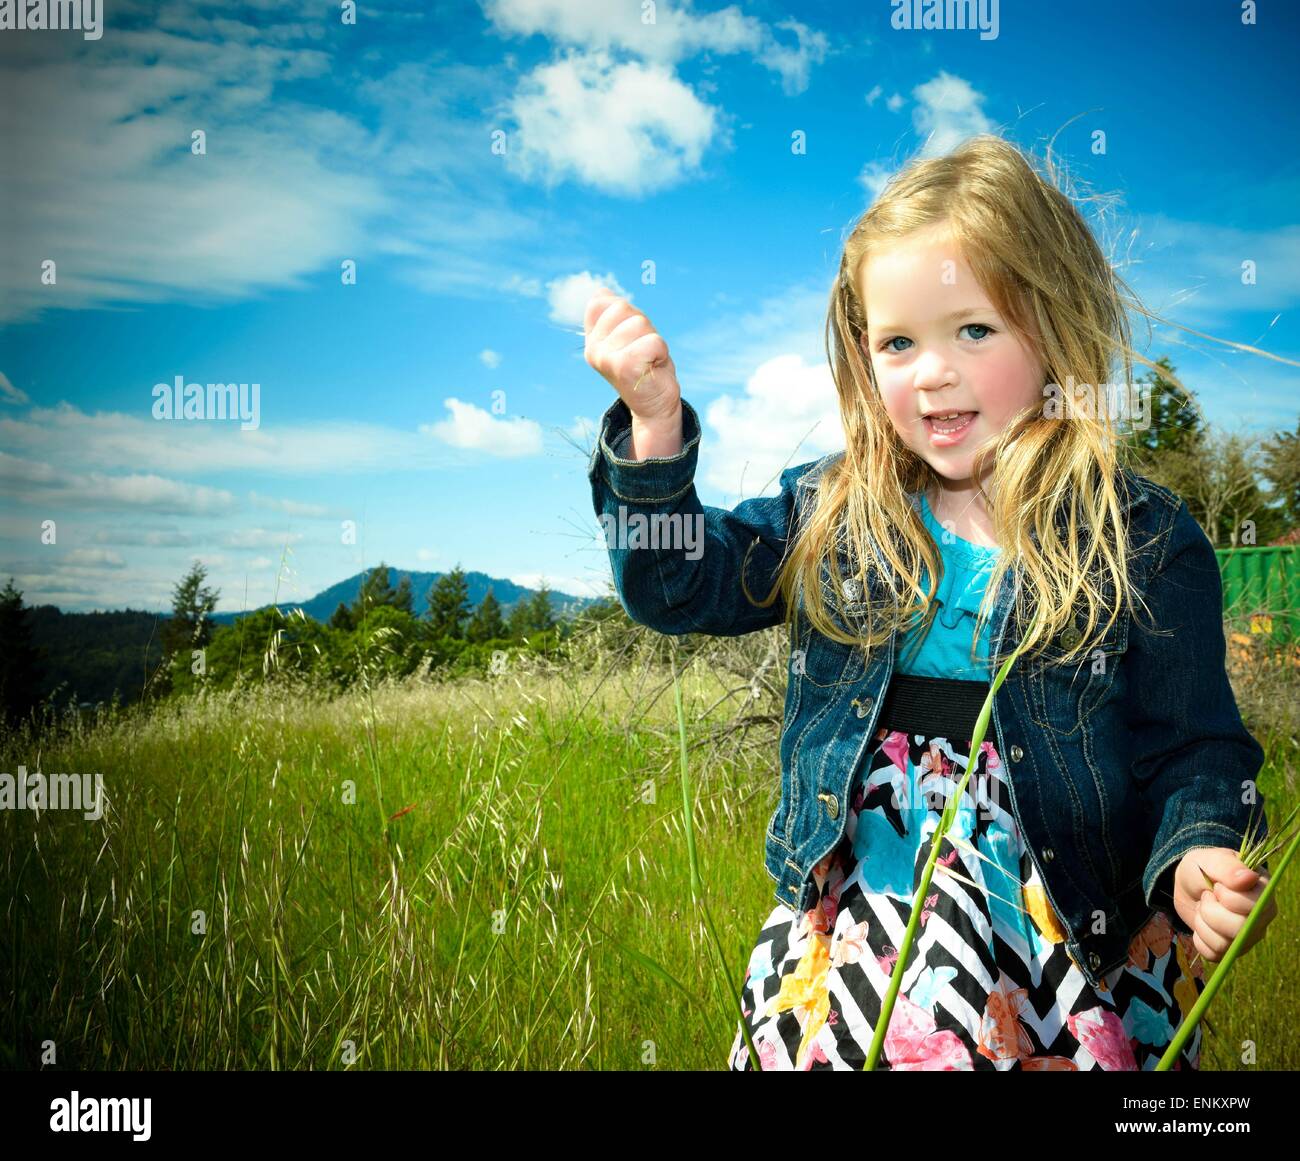 4 anno vecchia ragazza giocando in erba con il luminoso cielo blu dietro di lei. Foto Stock